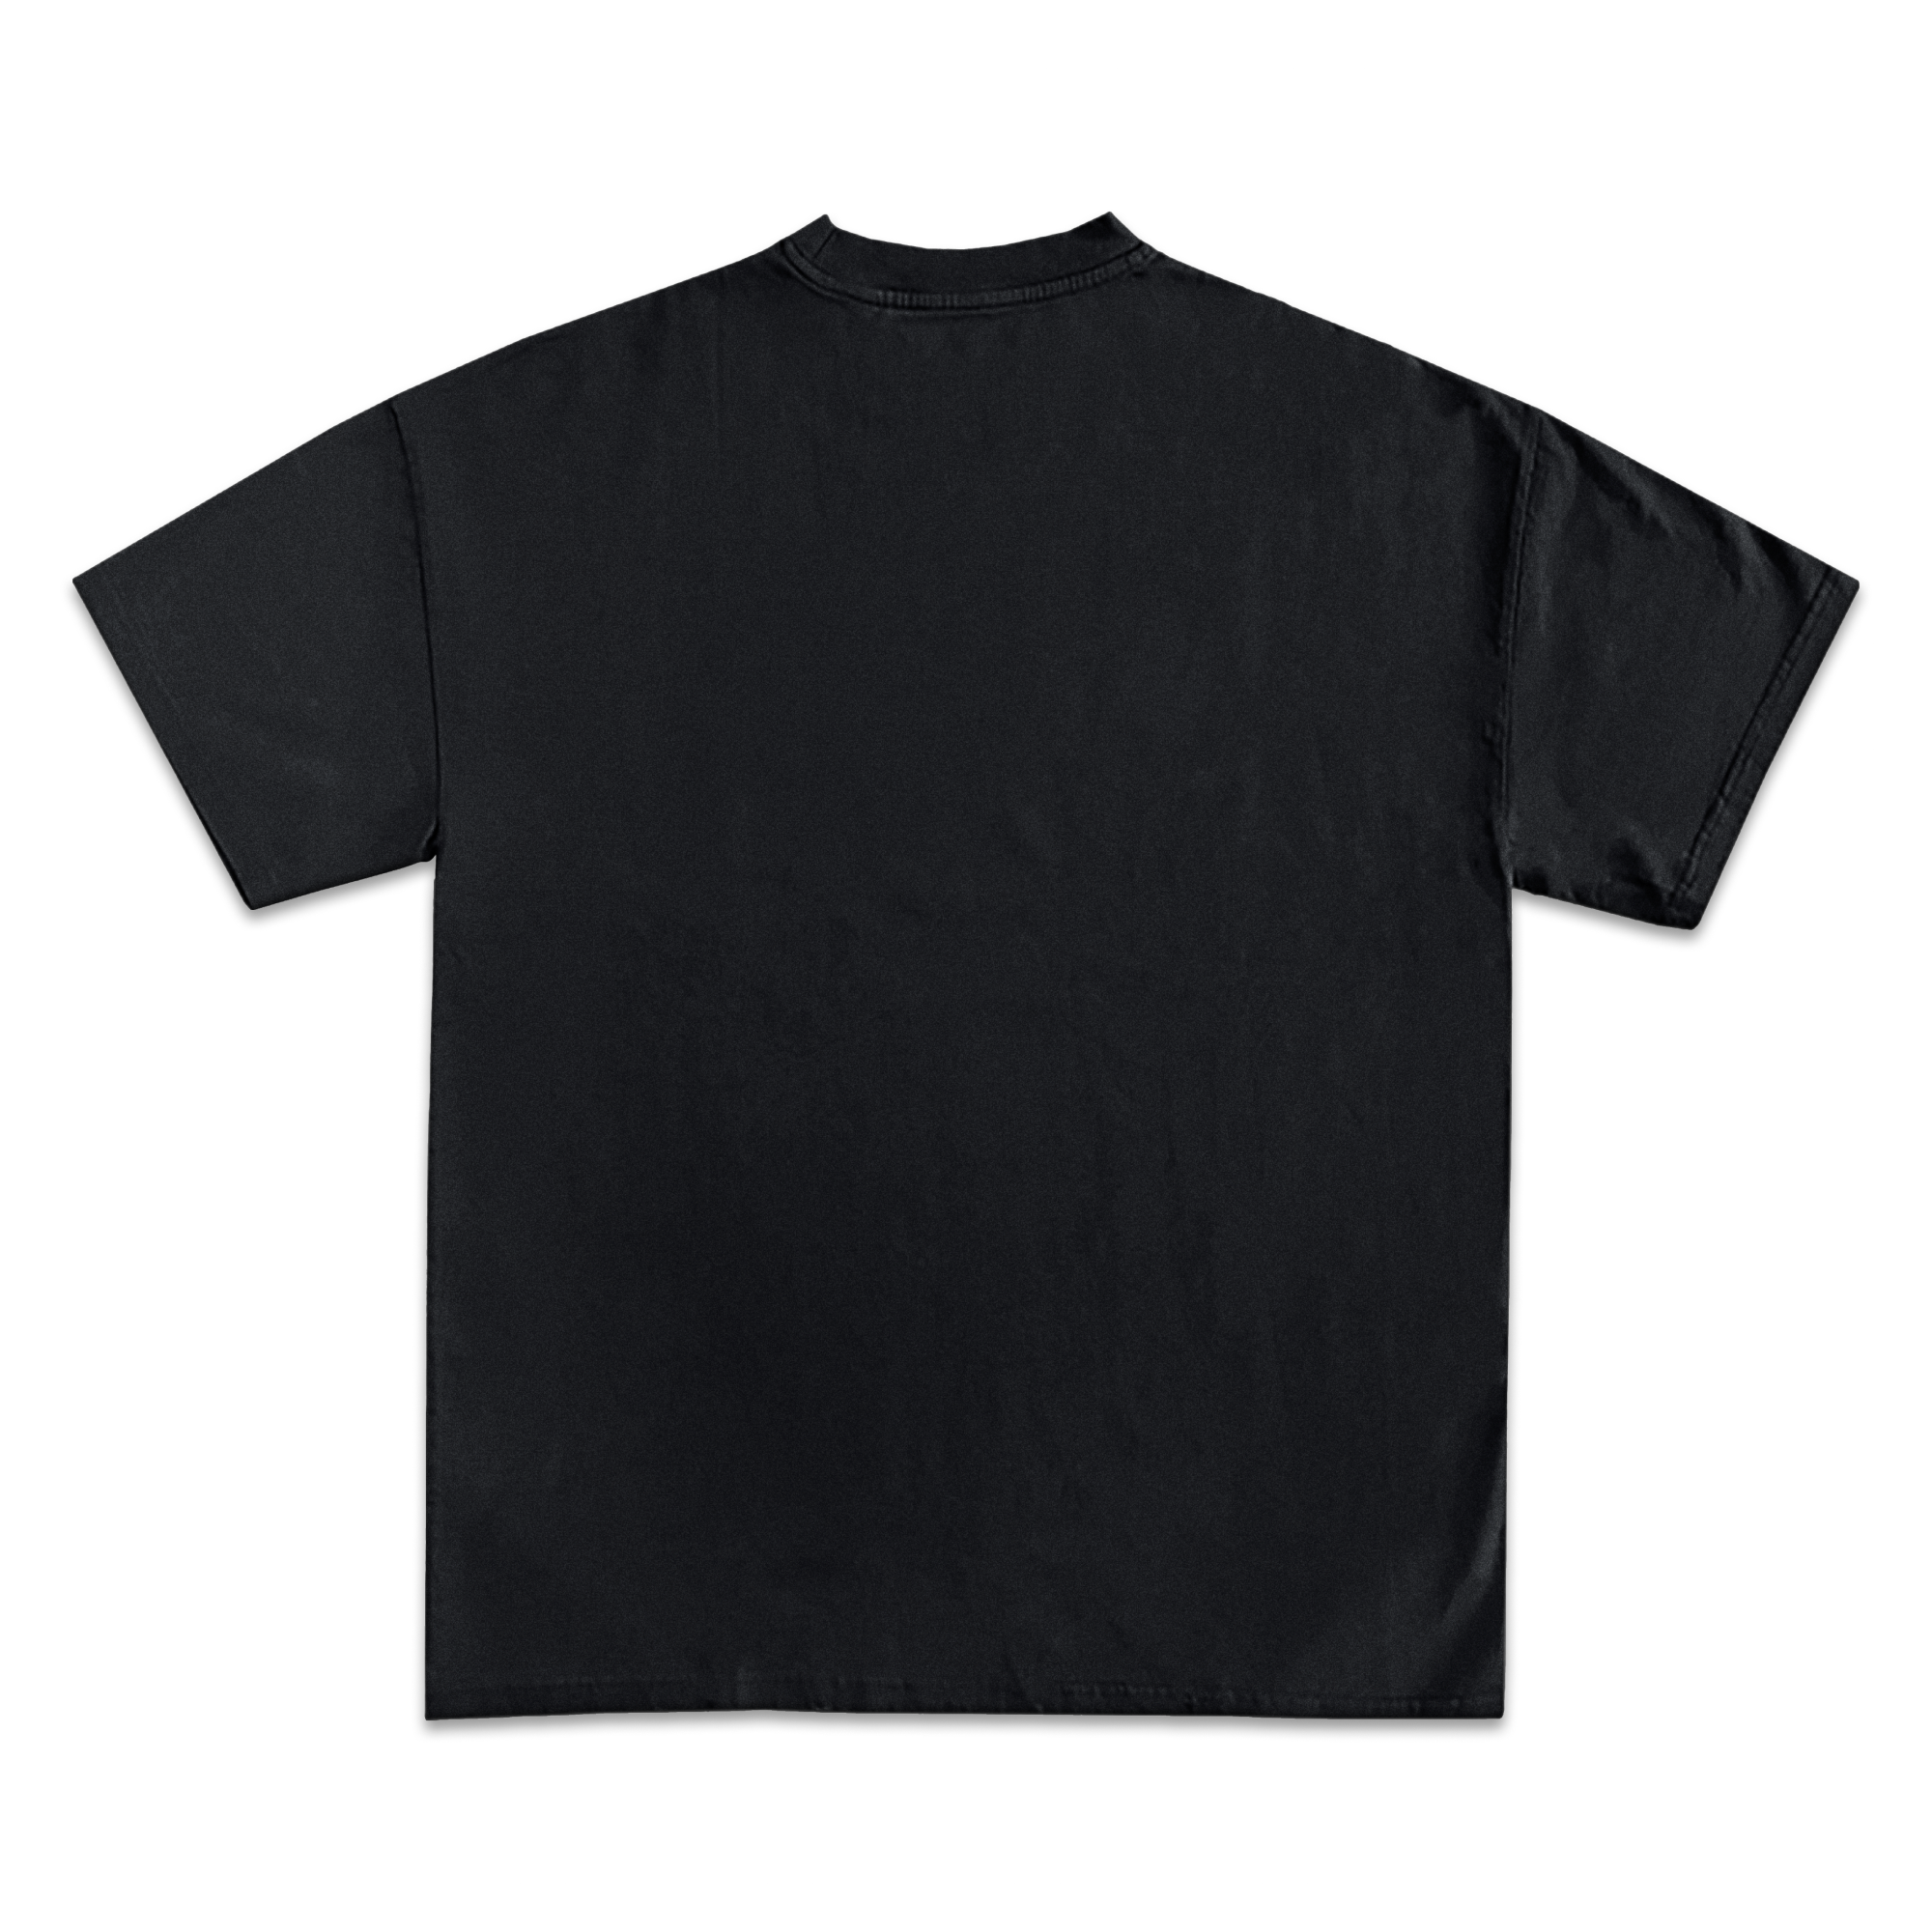 Space Jam Michael Jordan Tune Squad Graphic T-Shirt